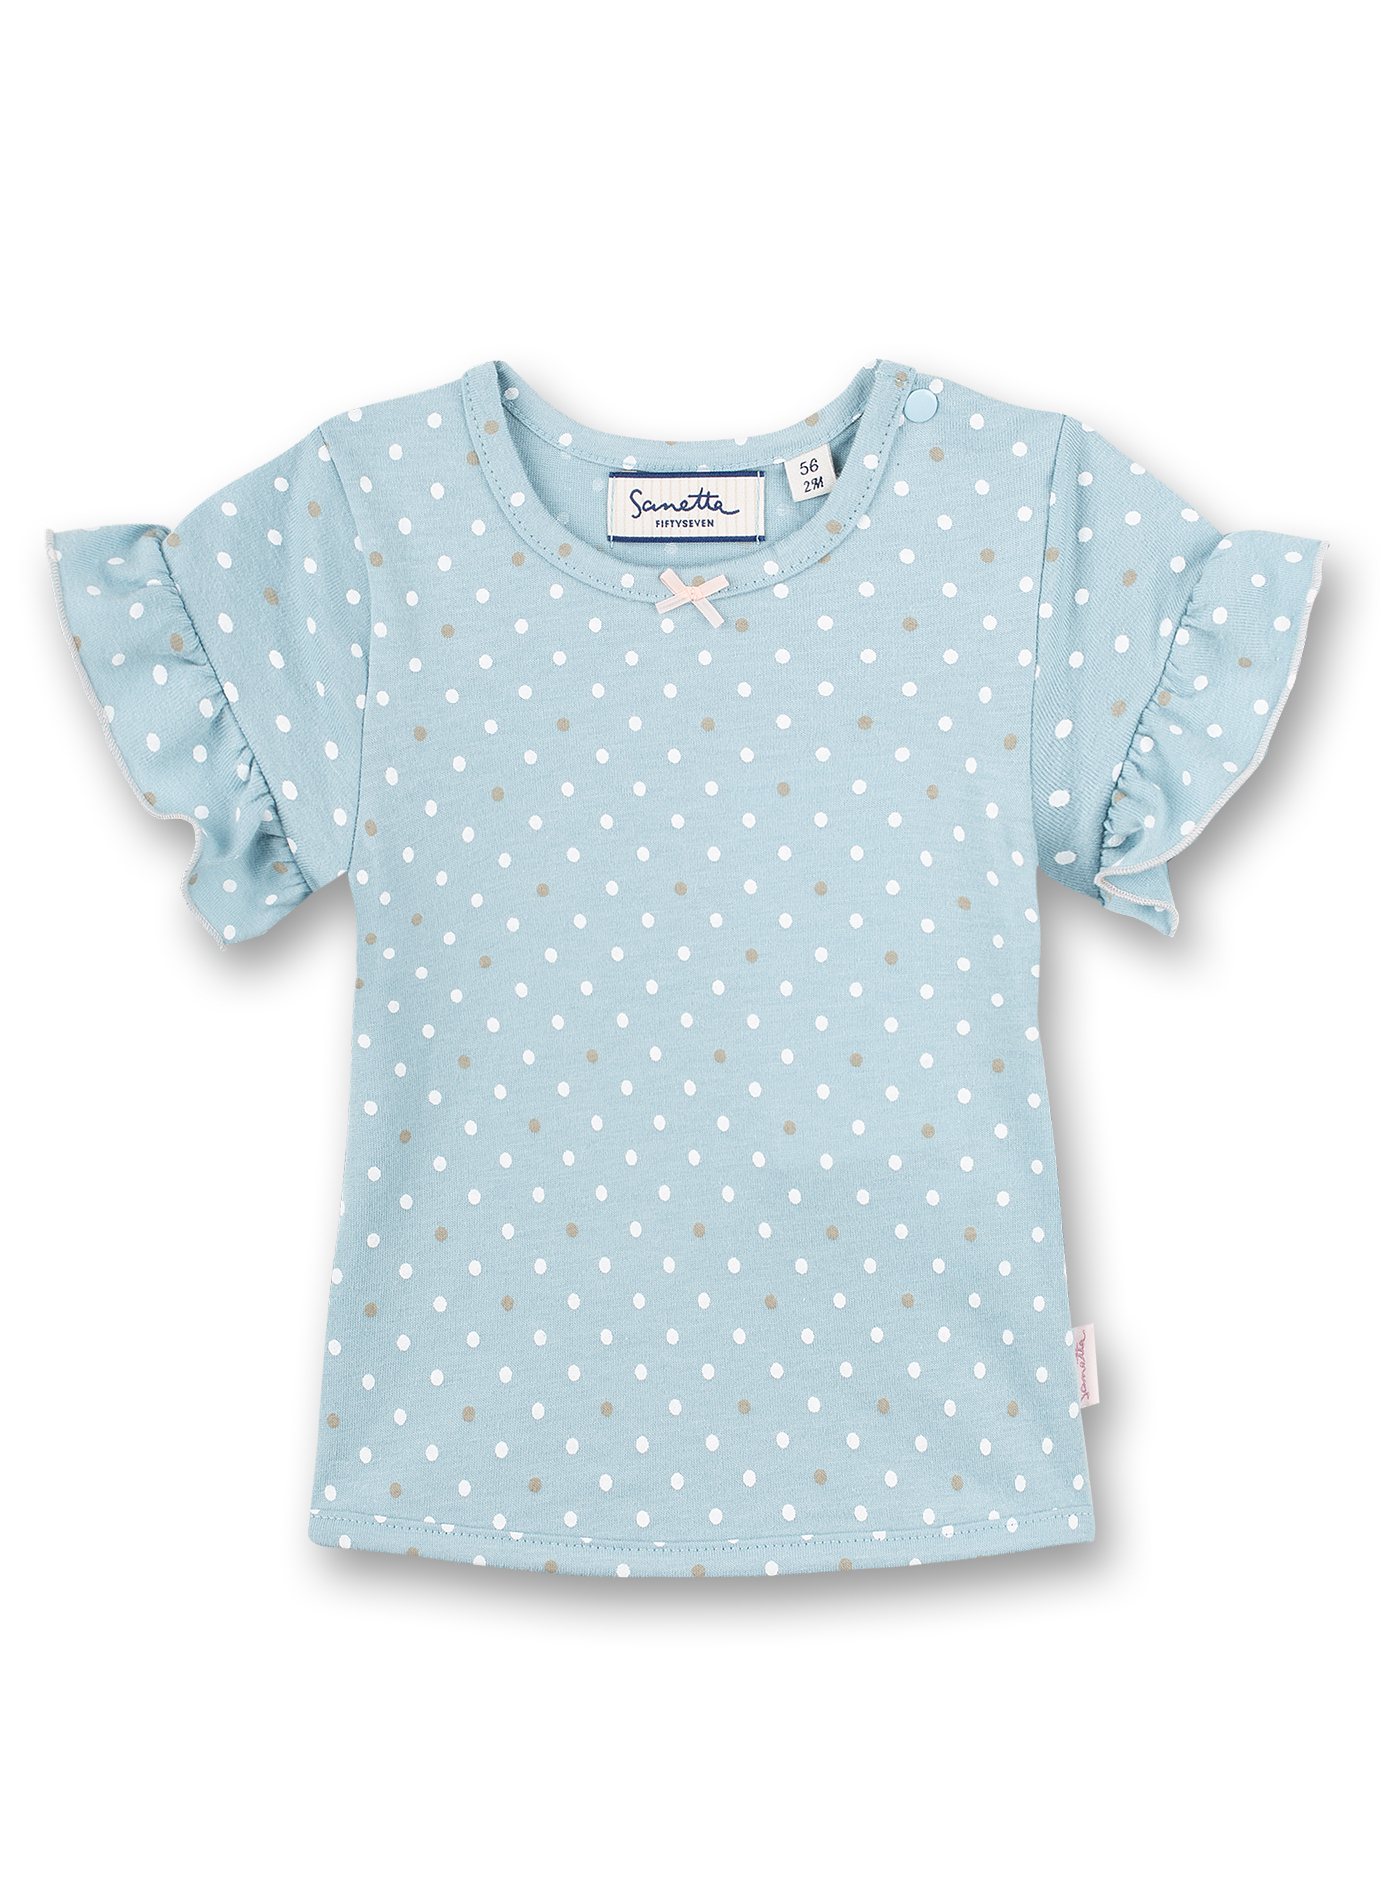 Mädchen T-Shirt Hellblau Dots-Allover Fluffy Duckling